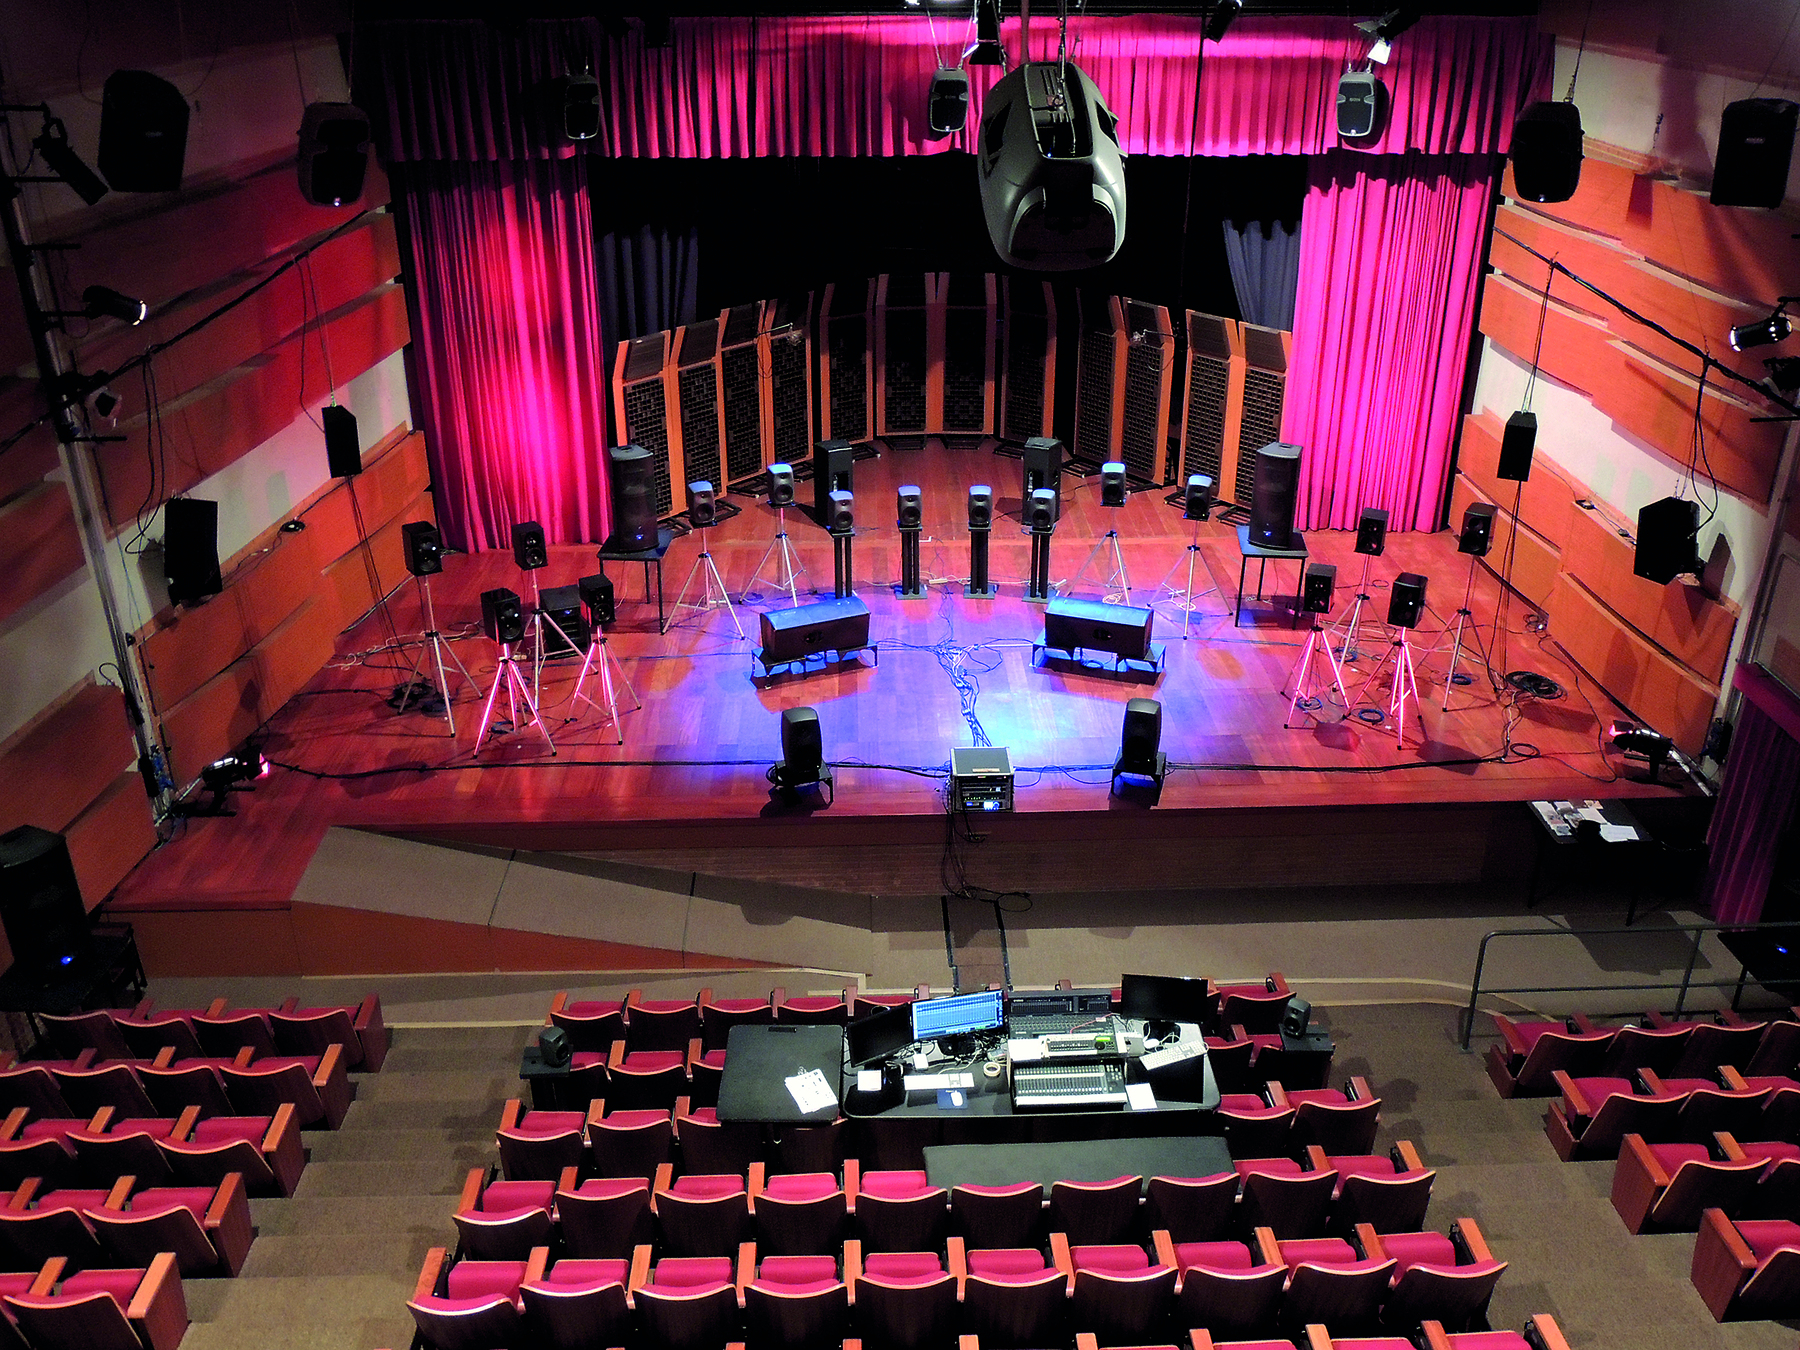 Fotografia. Vista do alto de um palco com alto-falantes em pedestais posicionados como se fosse uma orquestra. A plateia está vazia e, ao fundo, há cortinas vermelhas.